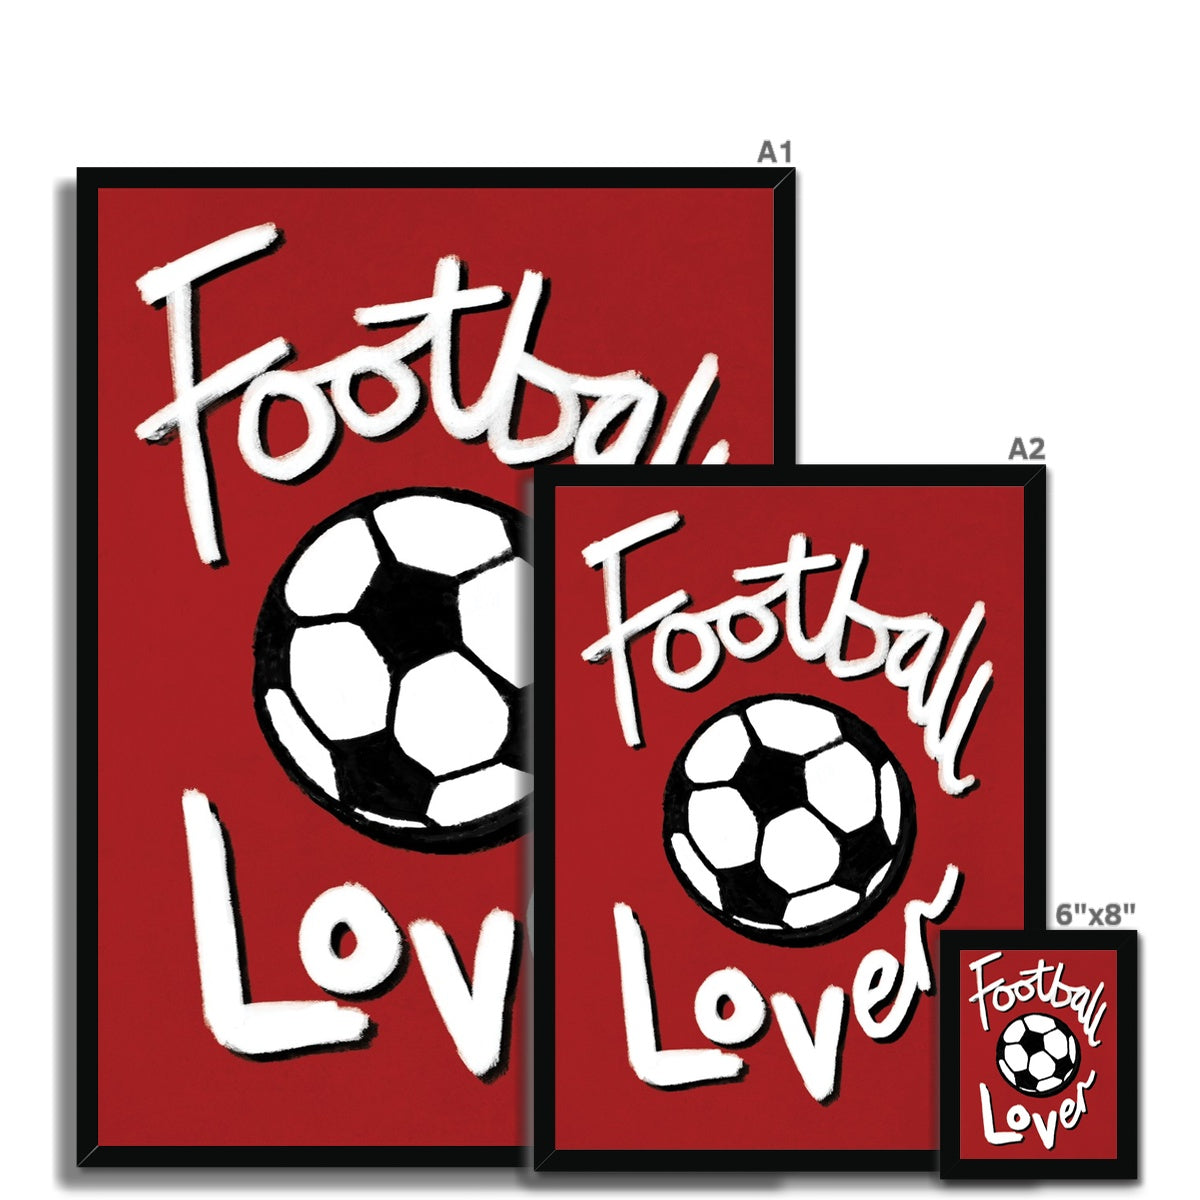 Football Lover - Red, Black and White Framed Print